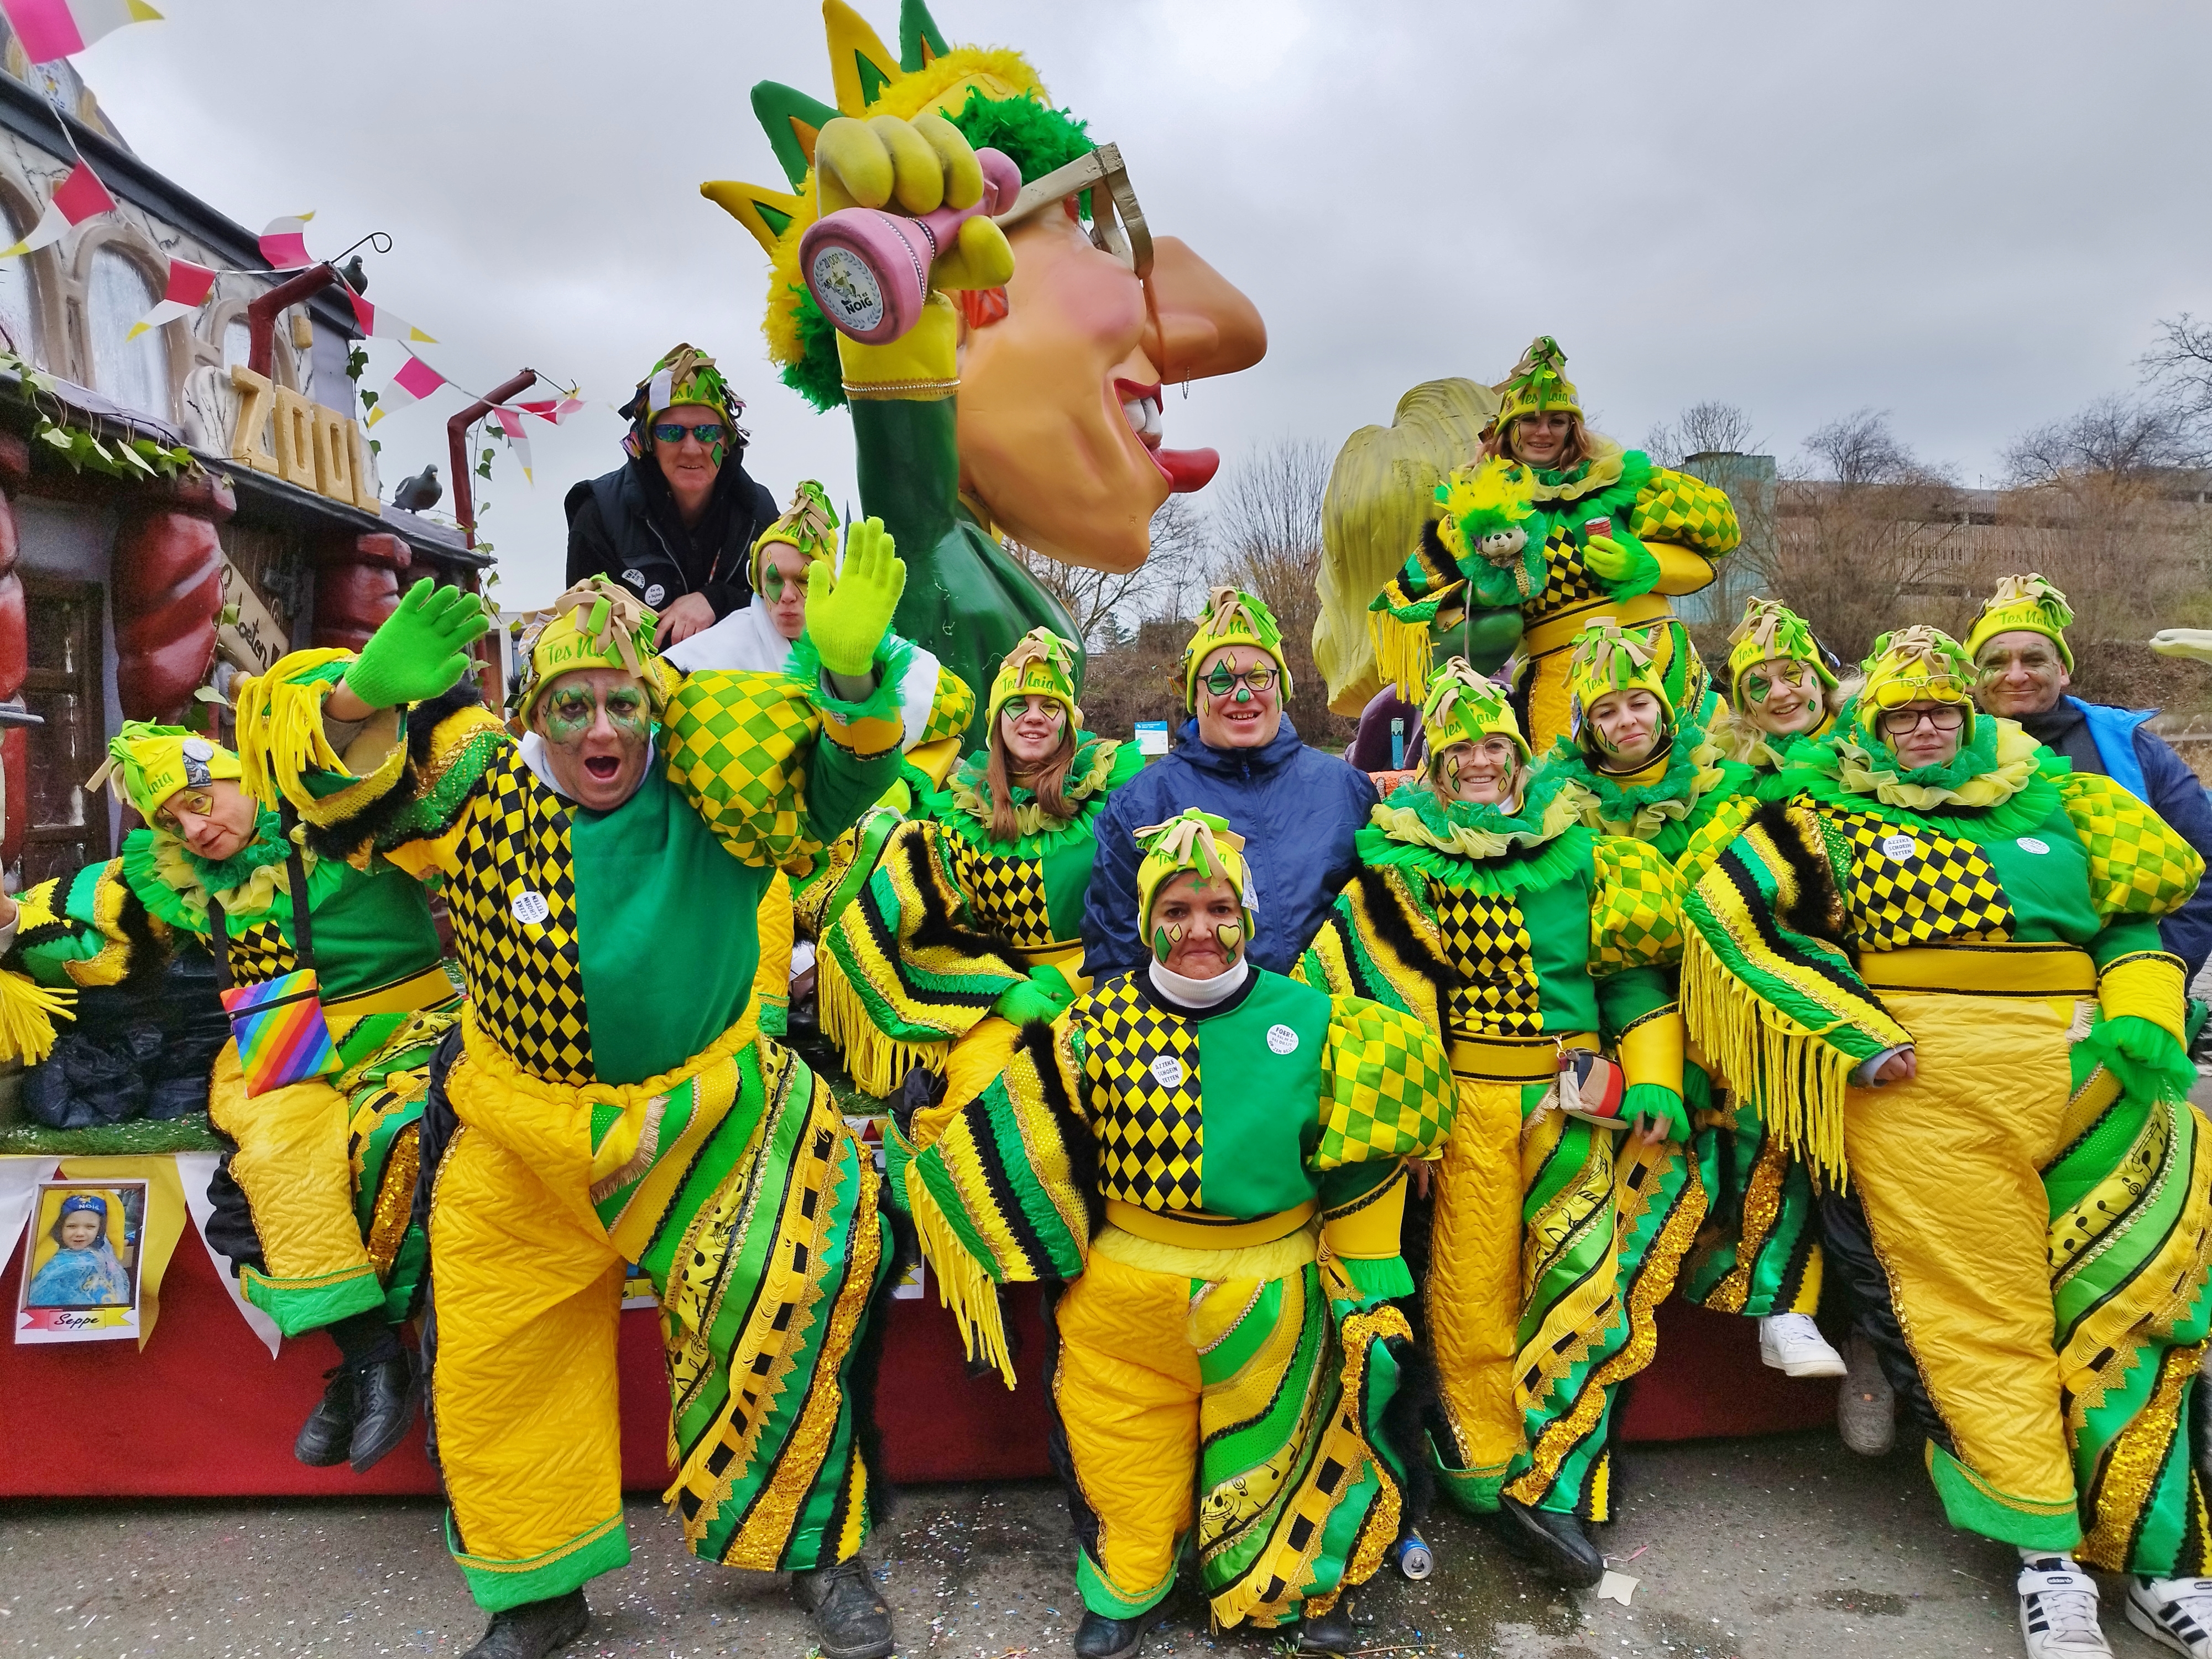 
Aalst Carnaval 2023 - Maandagsstoet met lossere sfeer en 'perfect' tijdsschema!
